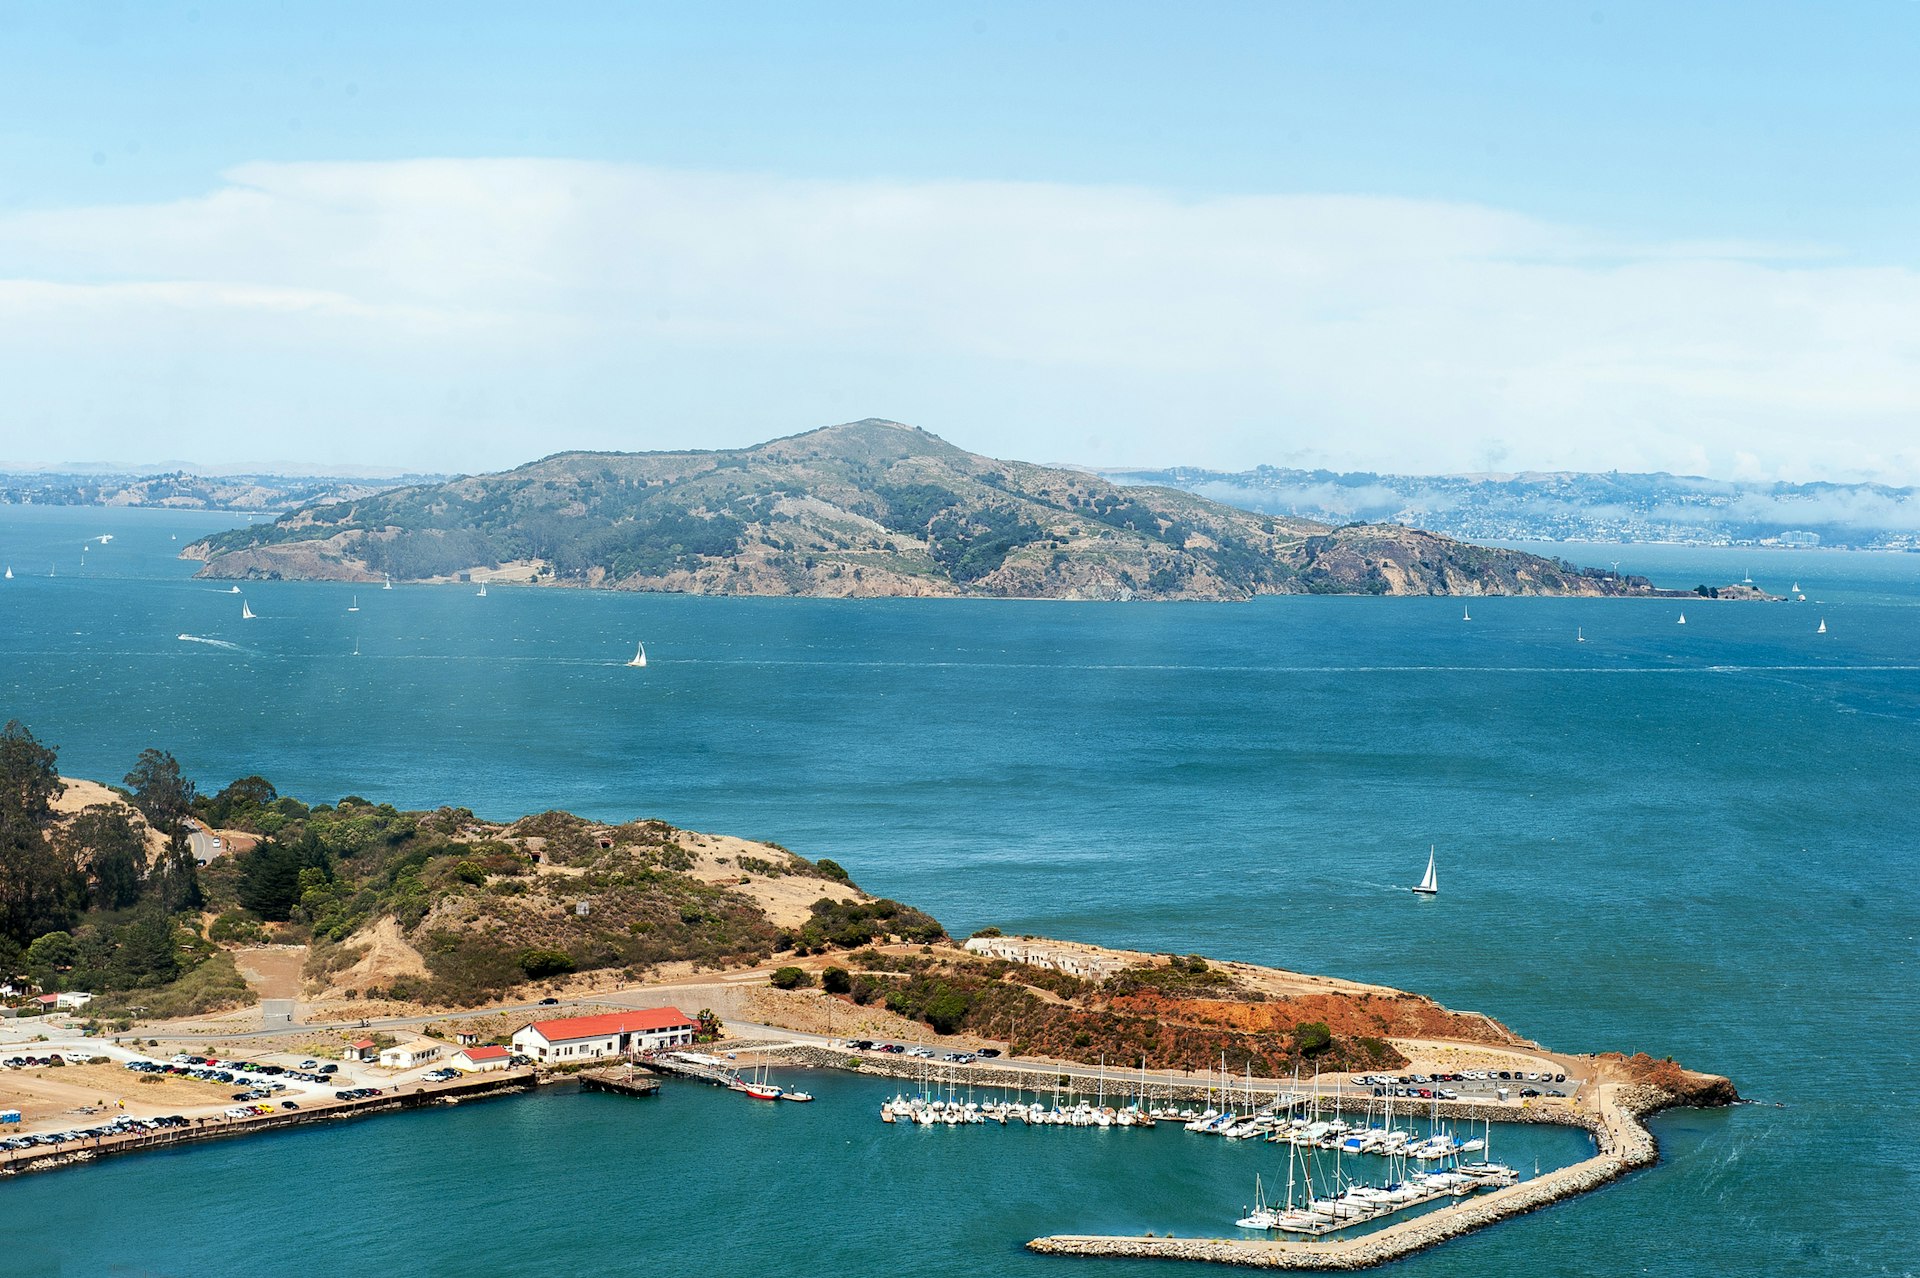 Angel Island in San Francisco Bay